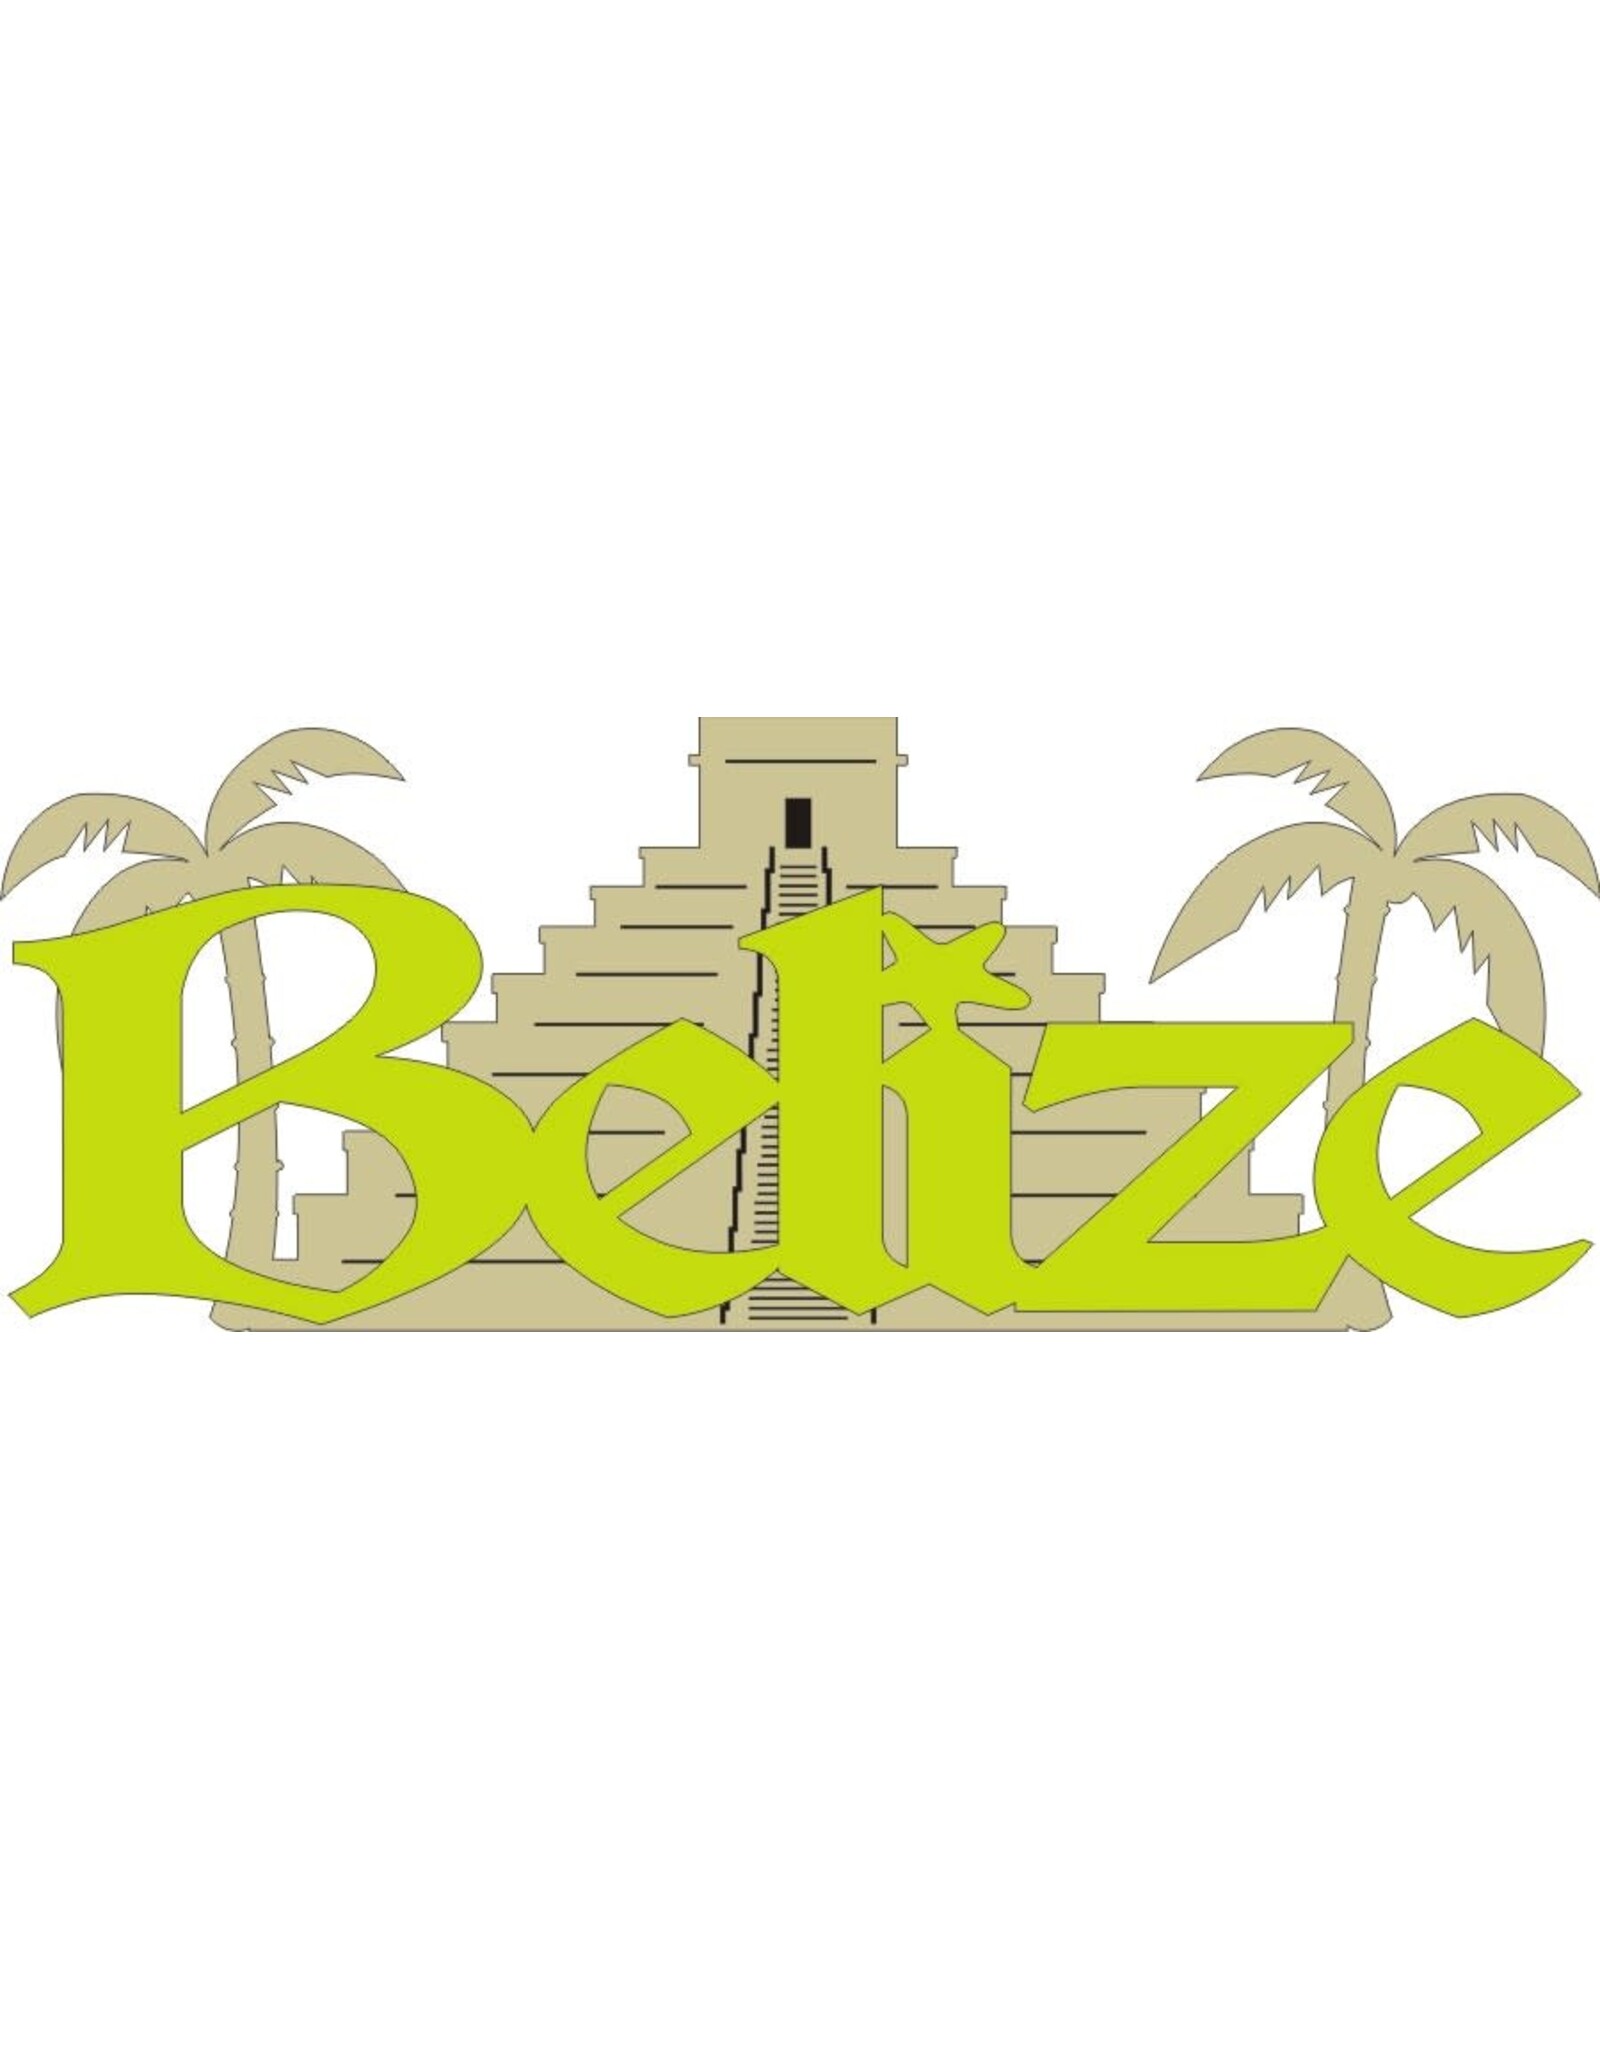 Belize banner